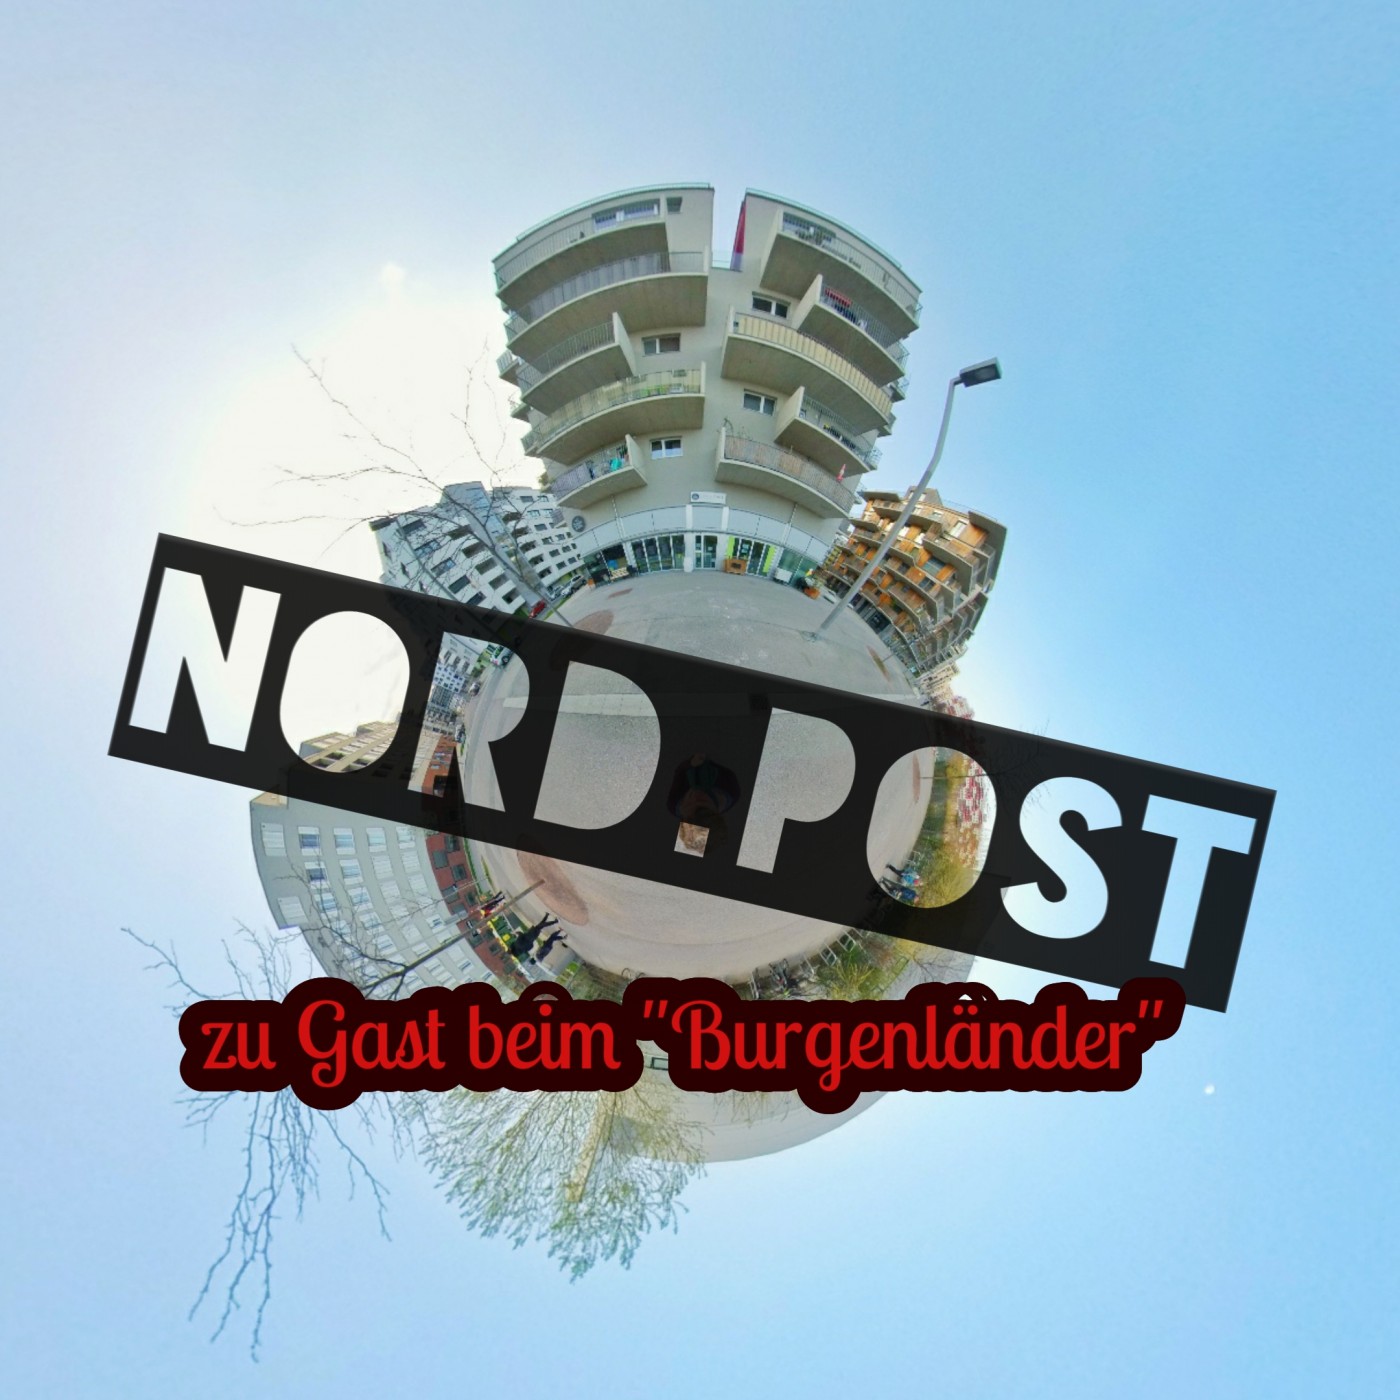 Nord.Post #03 – Zu Gast beim “Burgenländer”